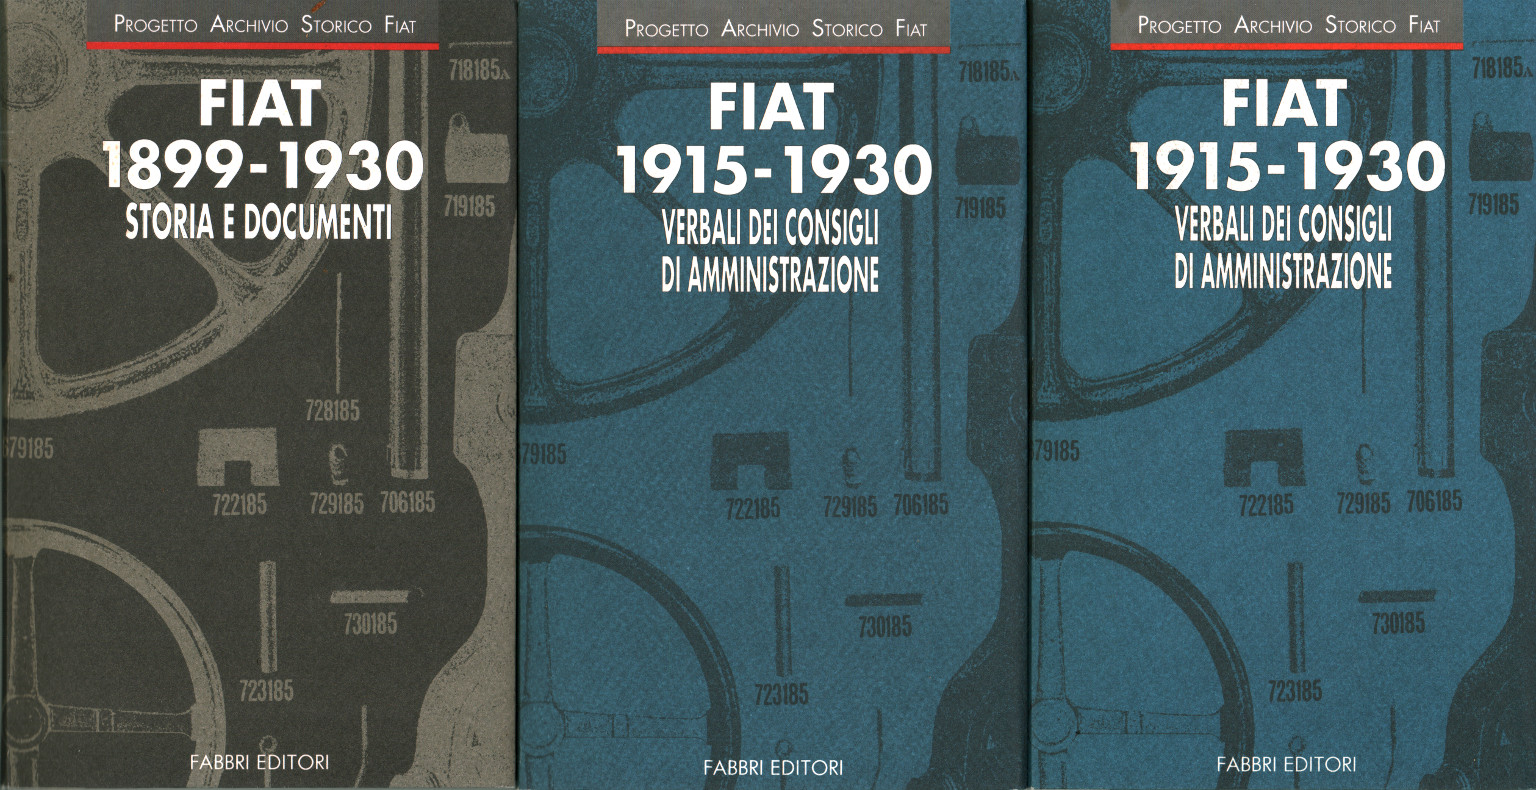 FIAT 1915-1930 Acta del directorio de%,FIAT 1915-1930 Acta del directorio de%,FIAT 1915-1930 Acta del directorio de%